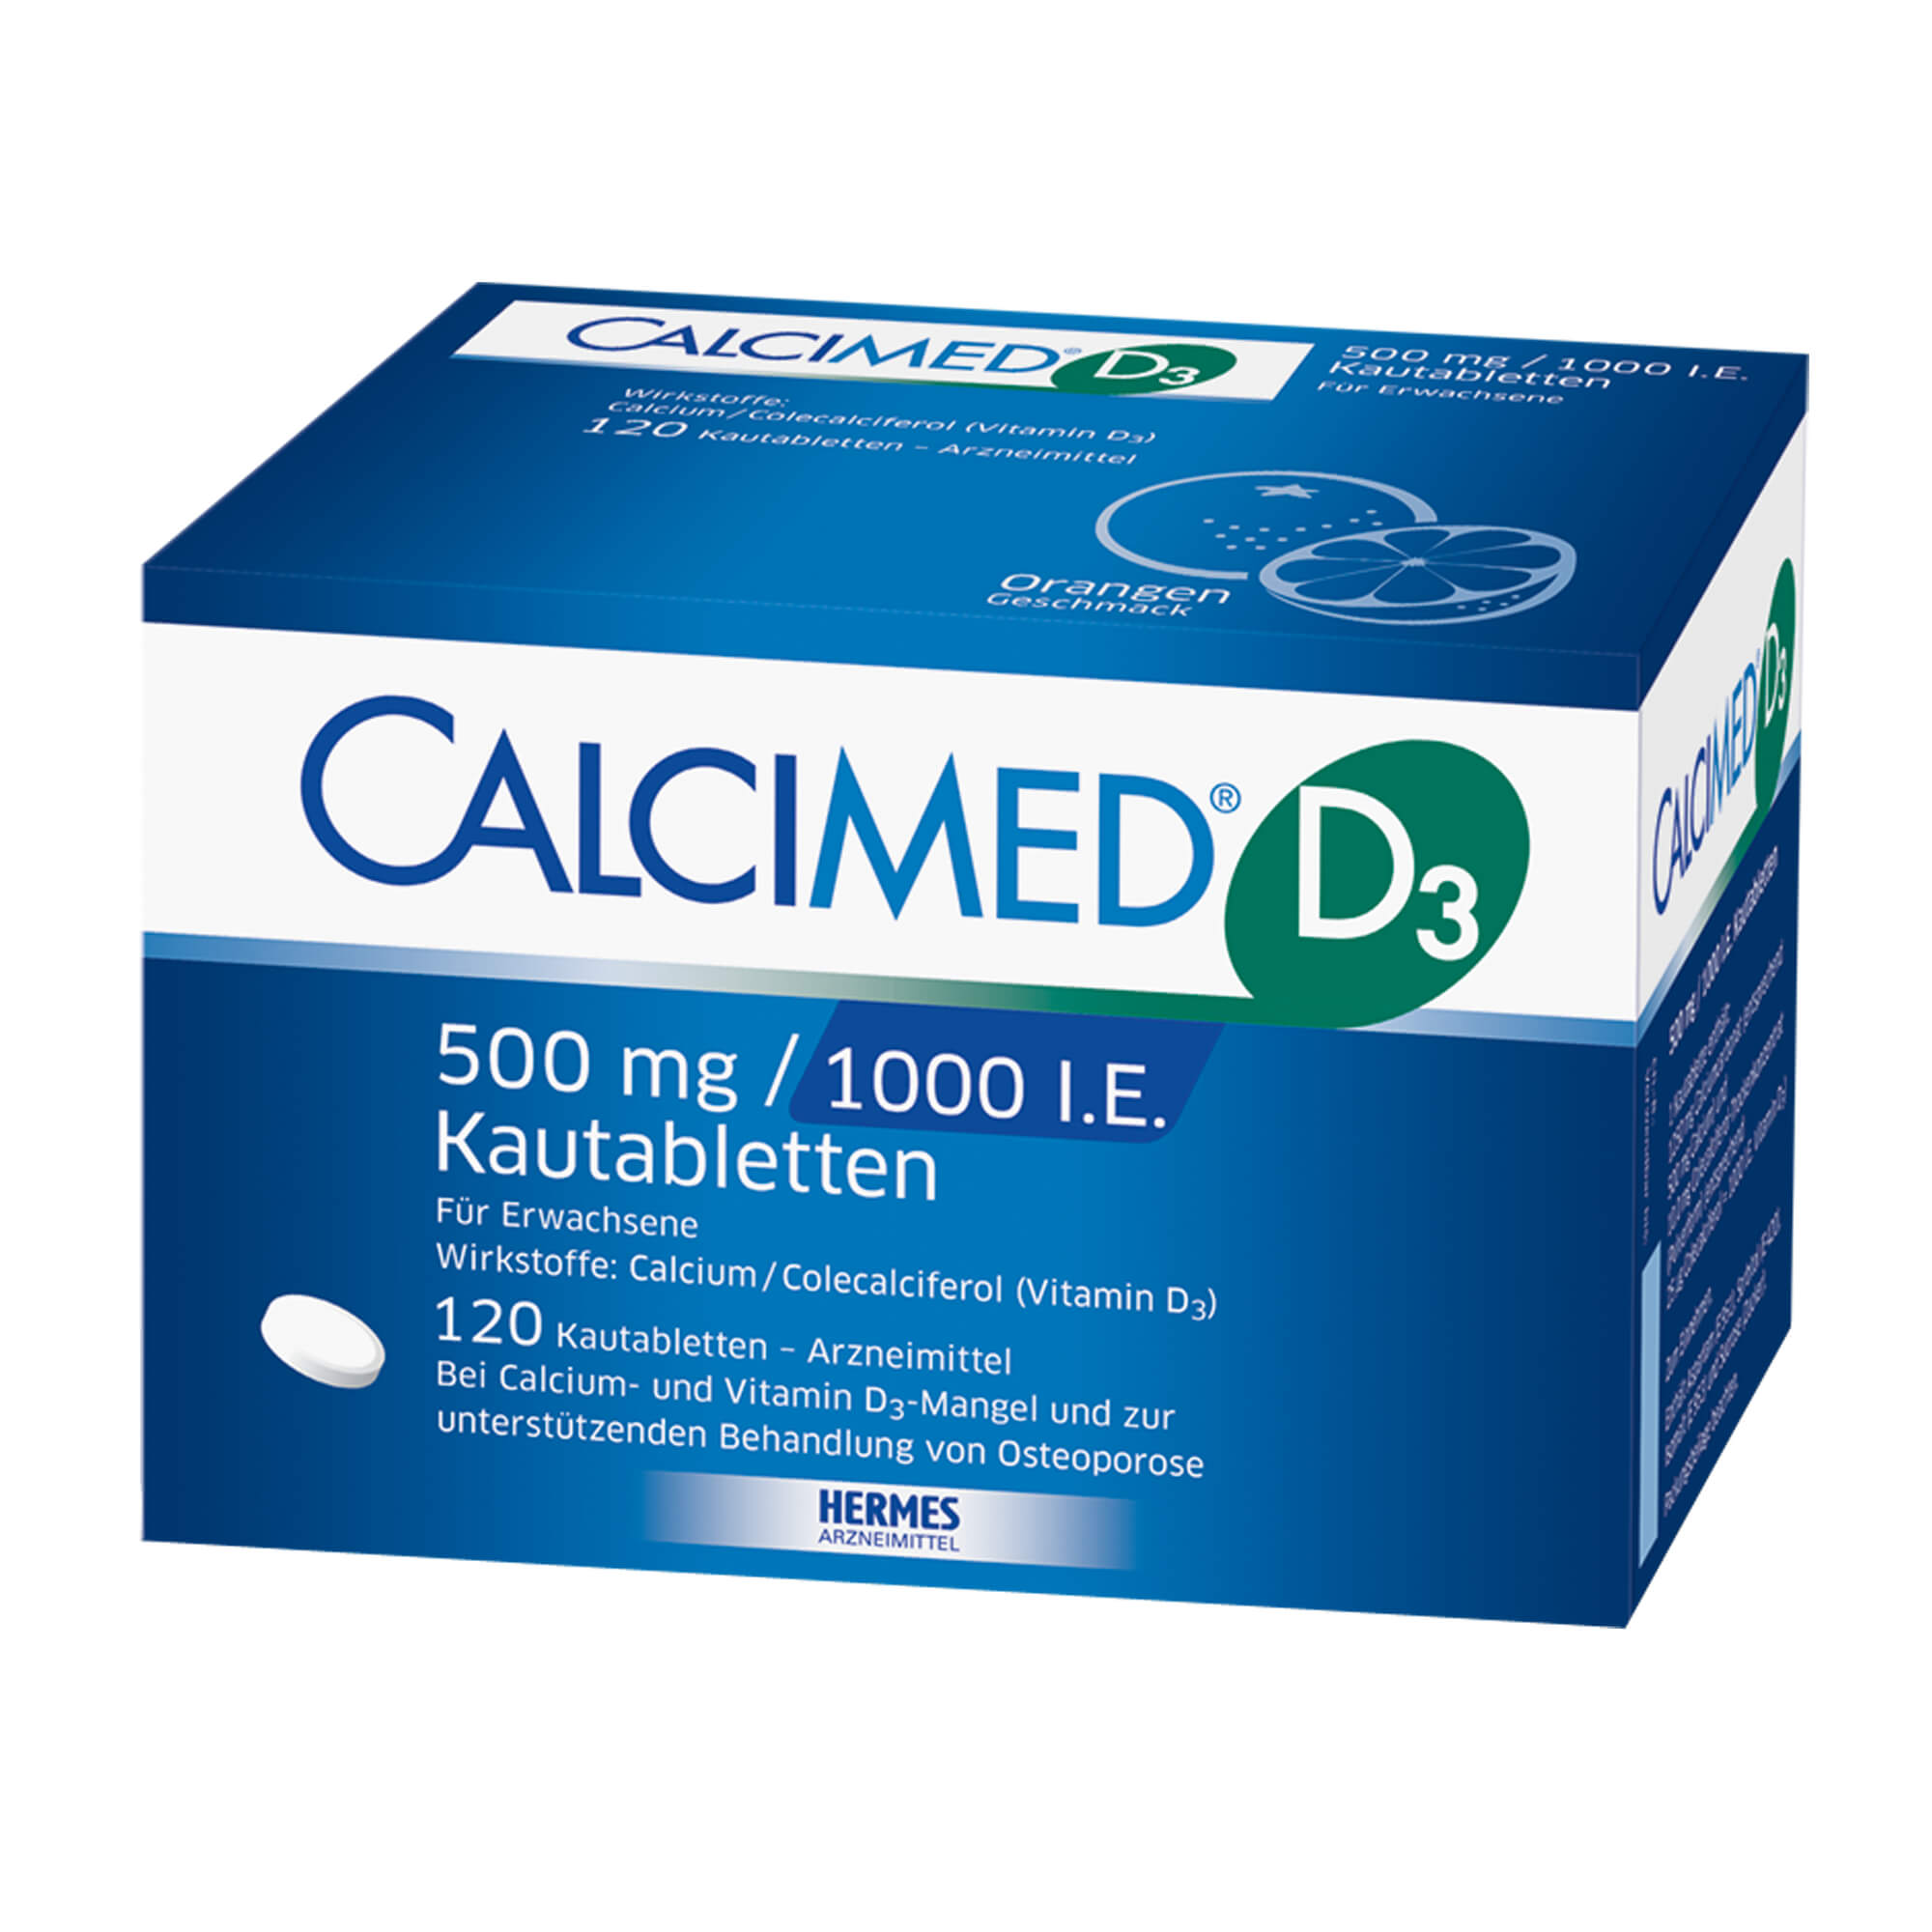 Calcium-Vitamin D3-Präparat. Mit Orangengeschmack.